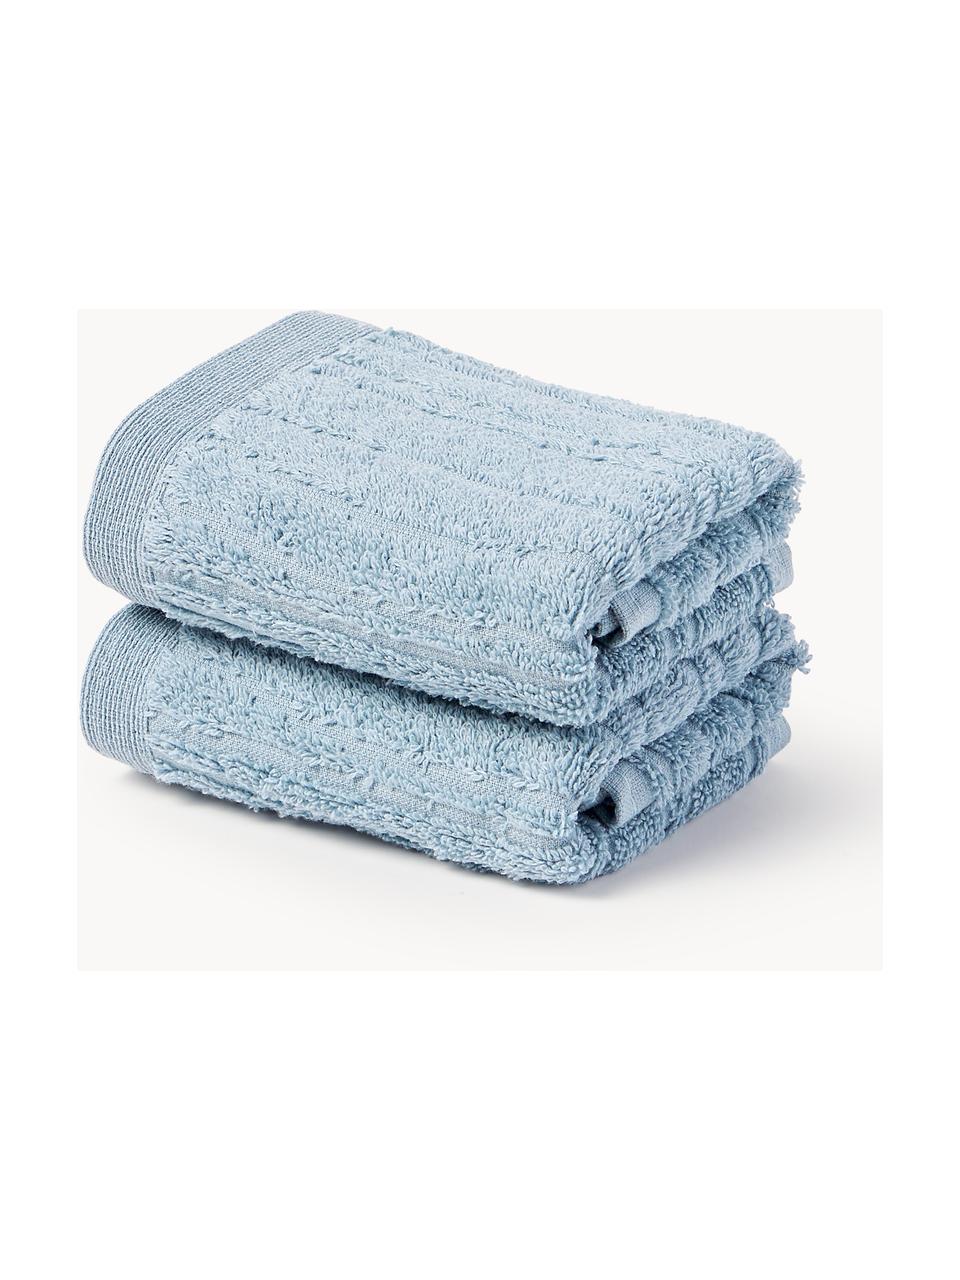 Ręcznik z bawełny Audrina, różne rozmiary, Szaroniebieski, Ręcznik, S 50 x D 100 cm, 2 szt.